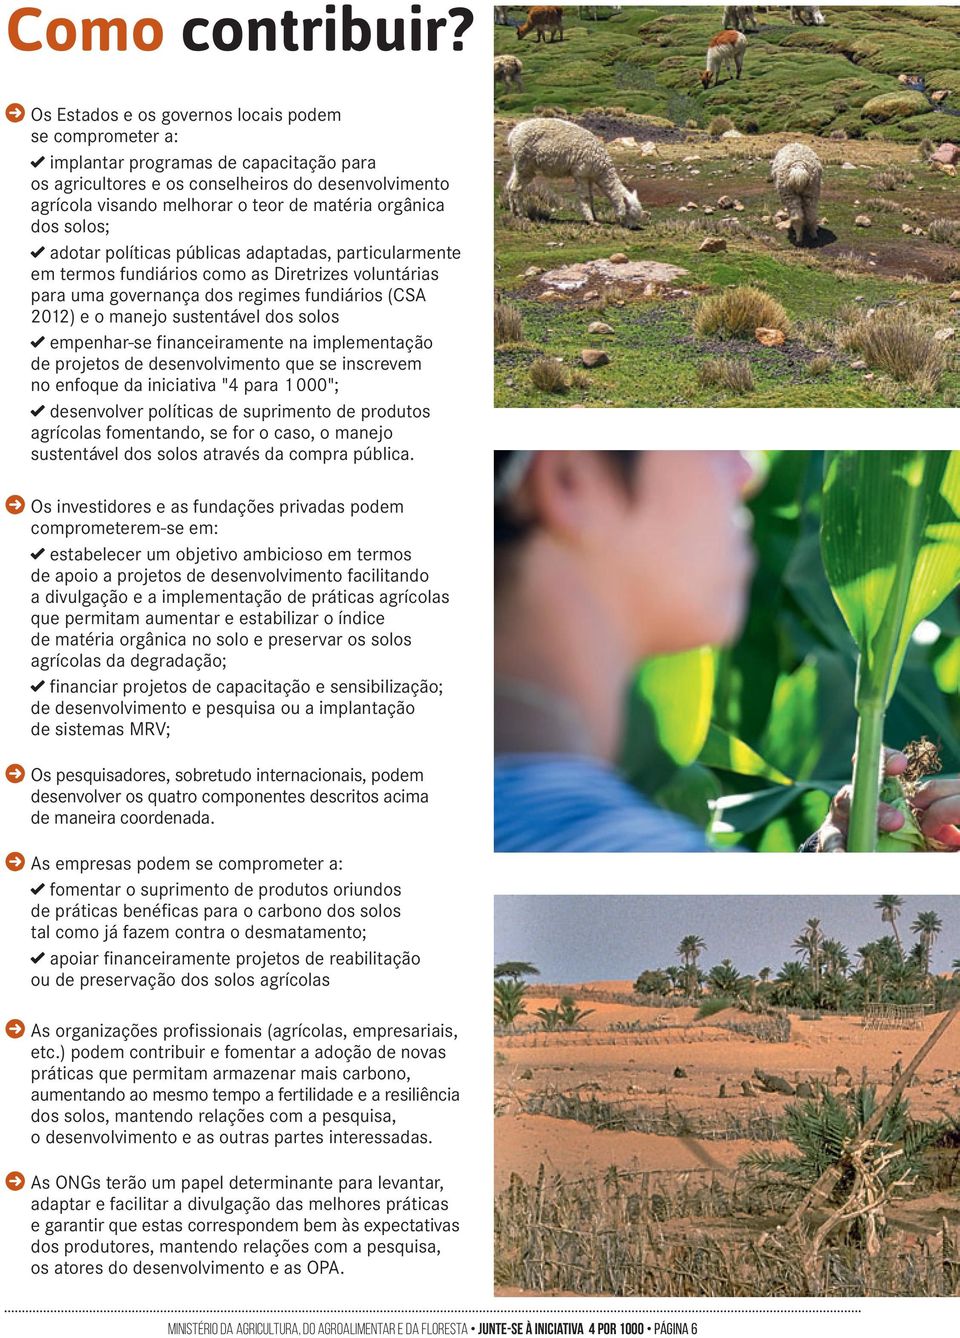 orgânica dos solos; adotar políticas públicas adaptadas, particularmente em termos fundiários como as Diretrizes voluntárias para uma governança dos regimes fundiários (CSA 2012) e o manejo